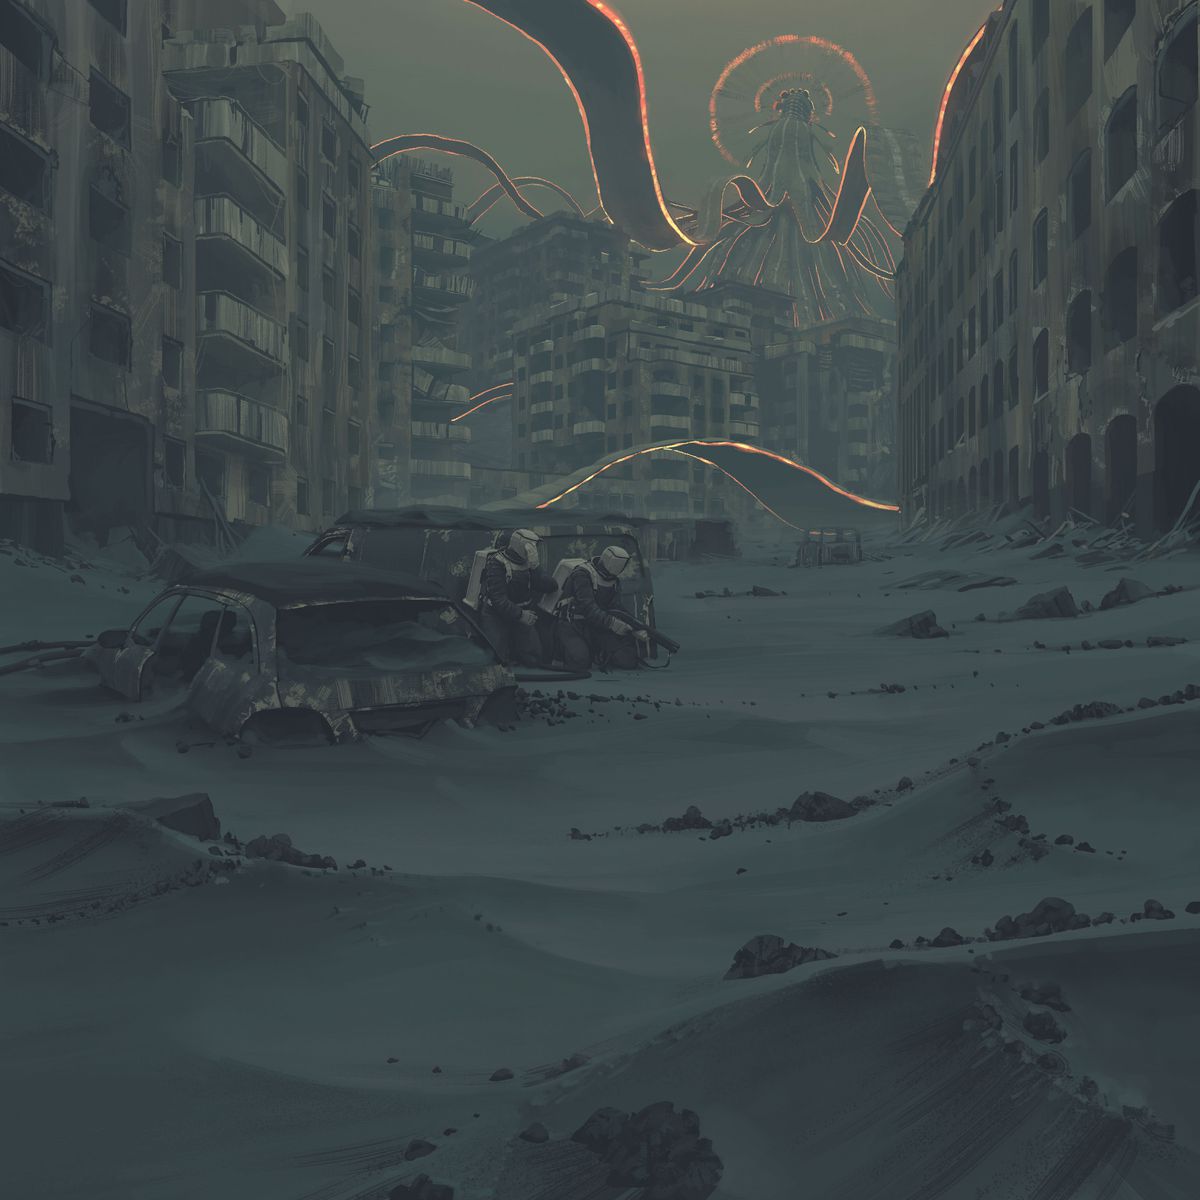 Flera beväpnade, lämpliga humanoider hukar i locket på en förstörd skåpbil. På avstånd slår glödande tendrils av svart filament ut mot en förstörd stadsbild.